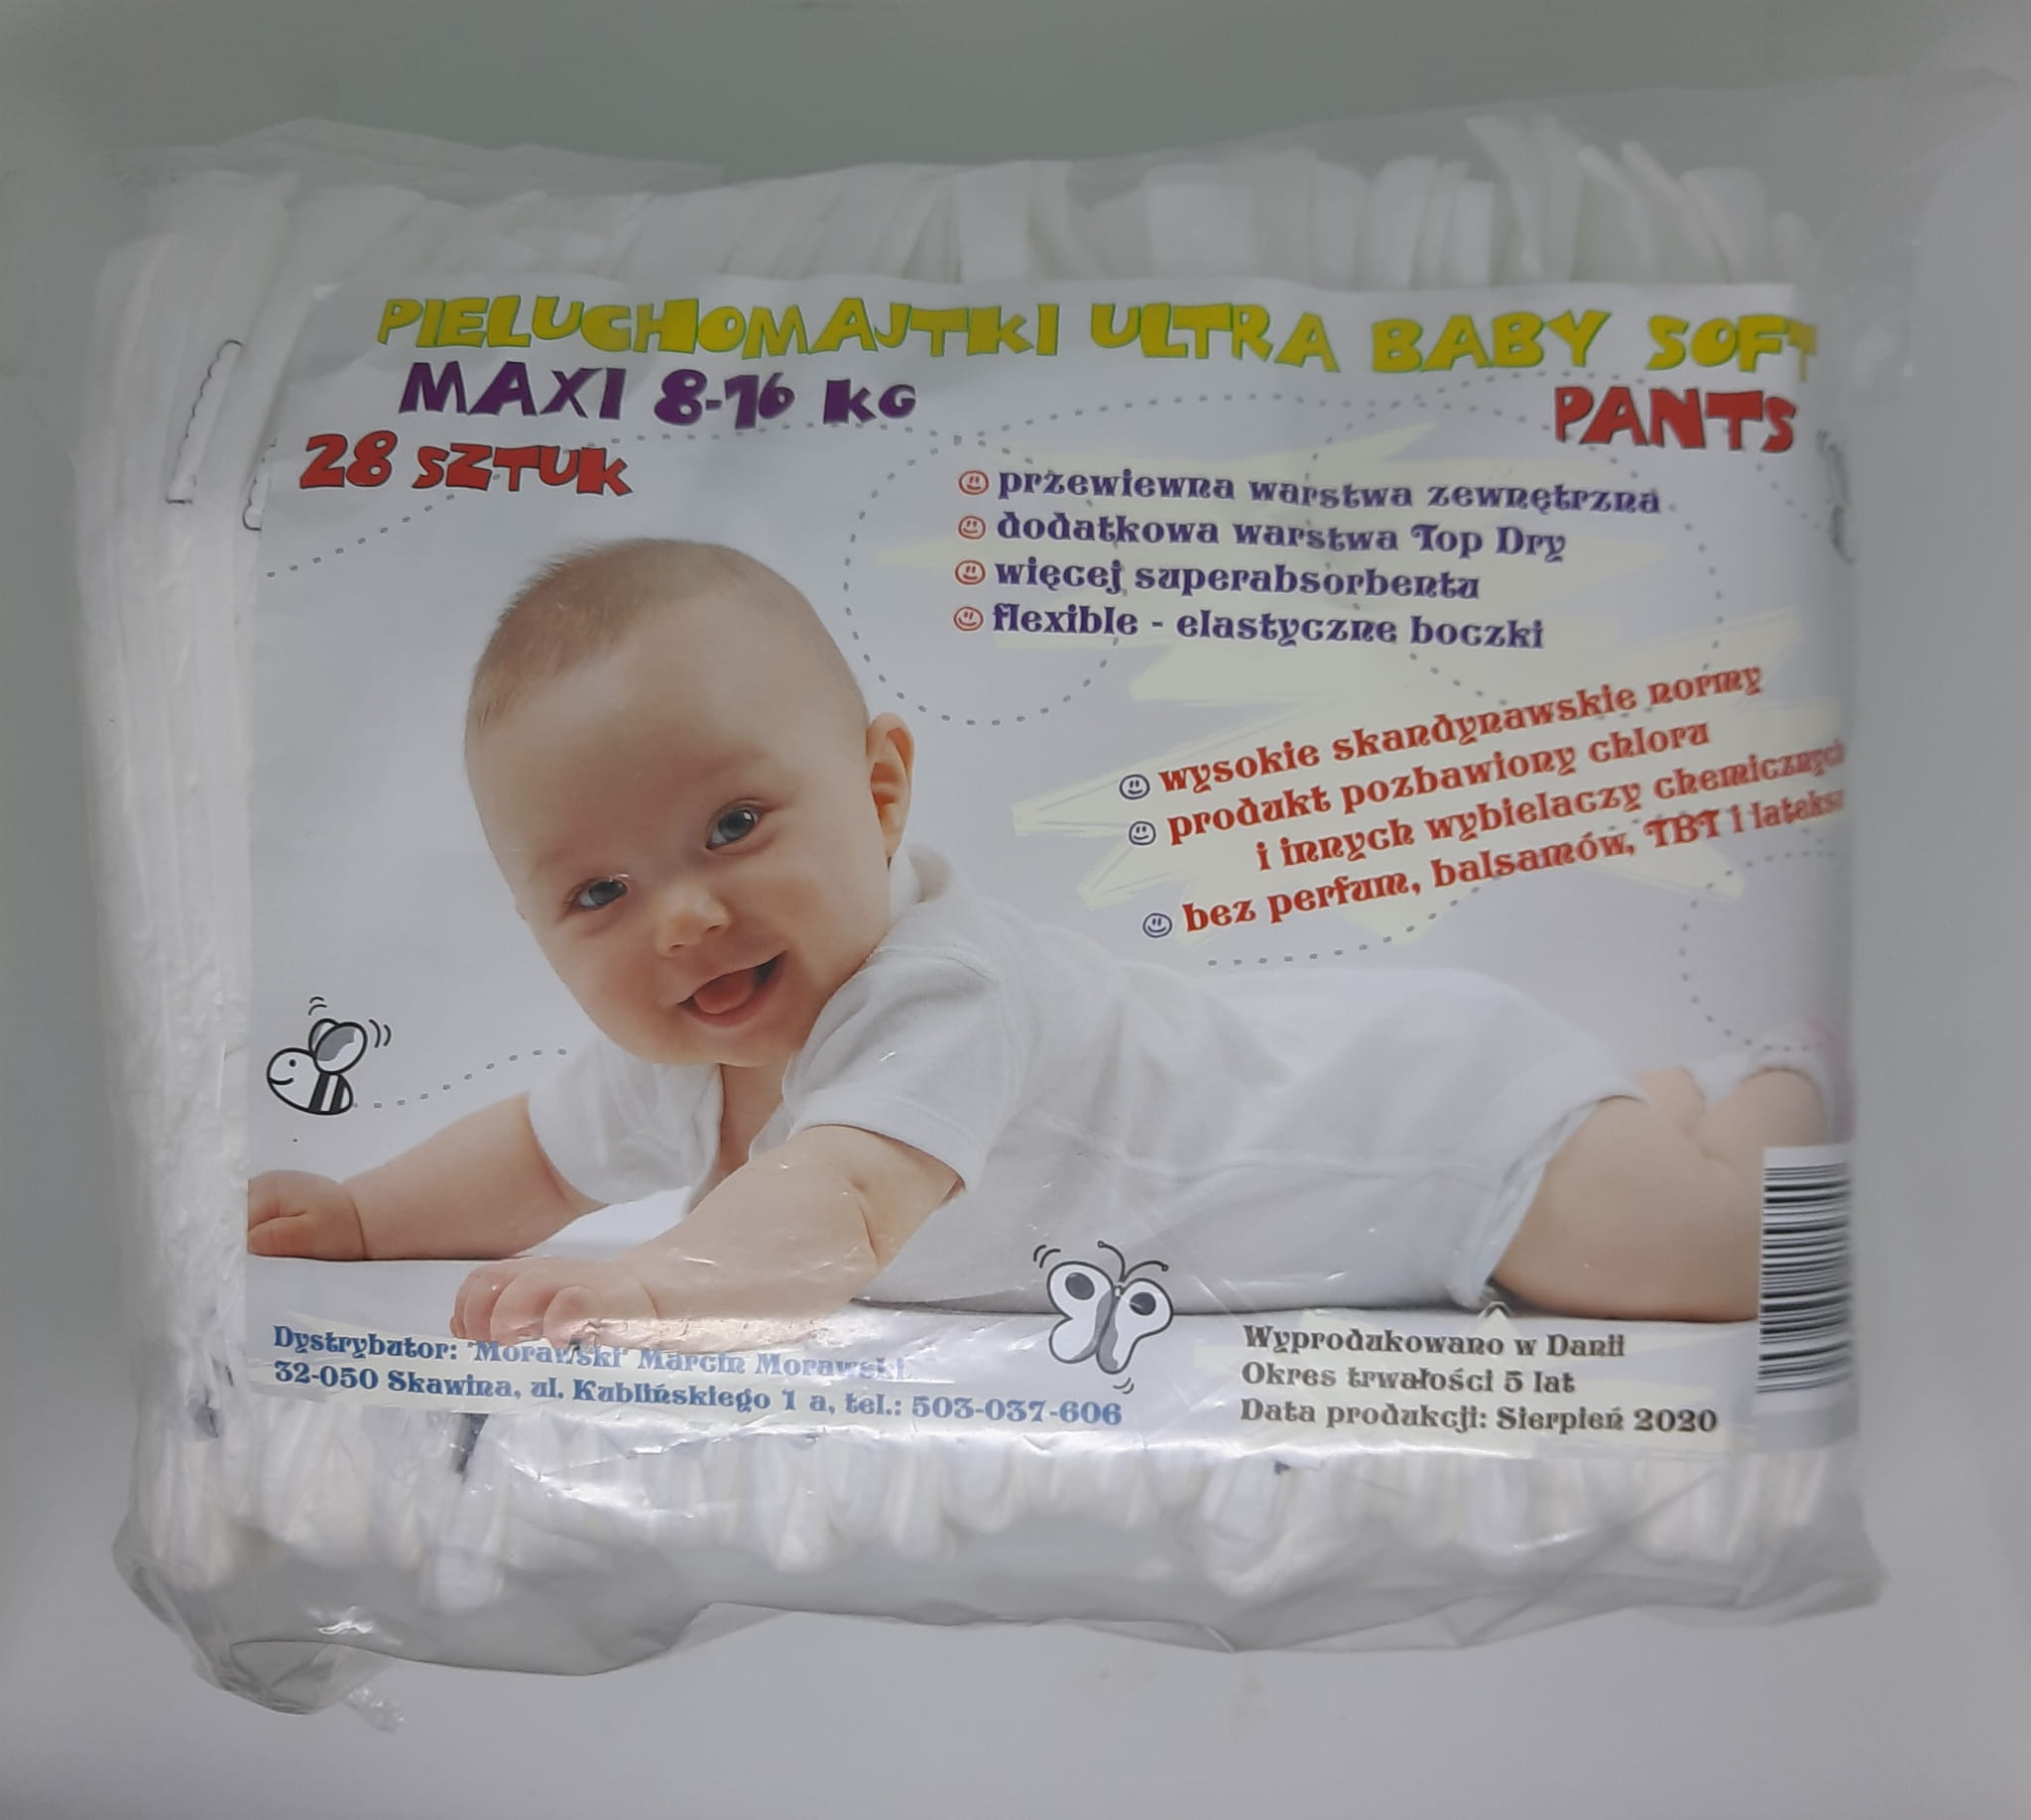 ultra baby soft pieluchomajtki